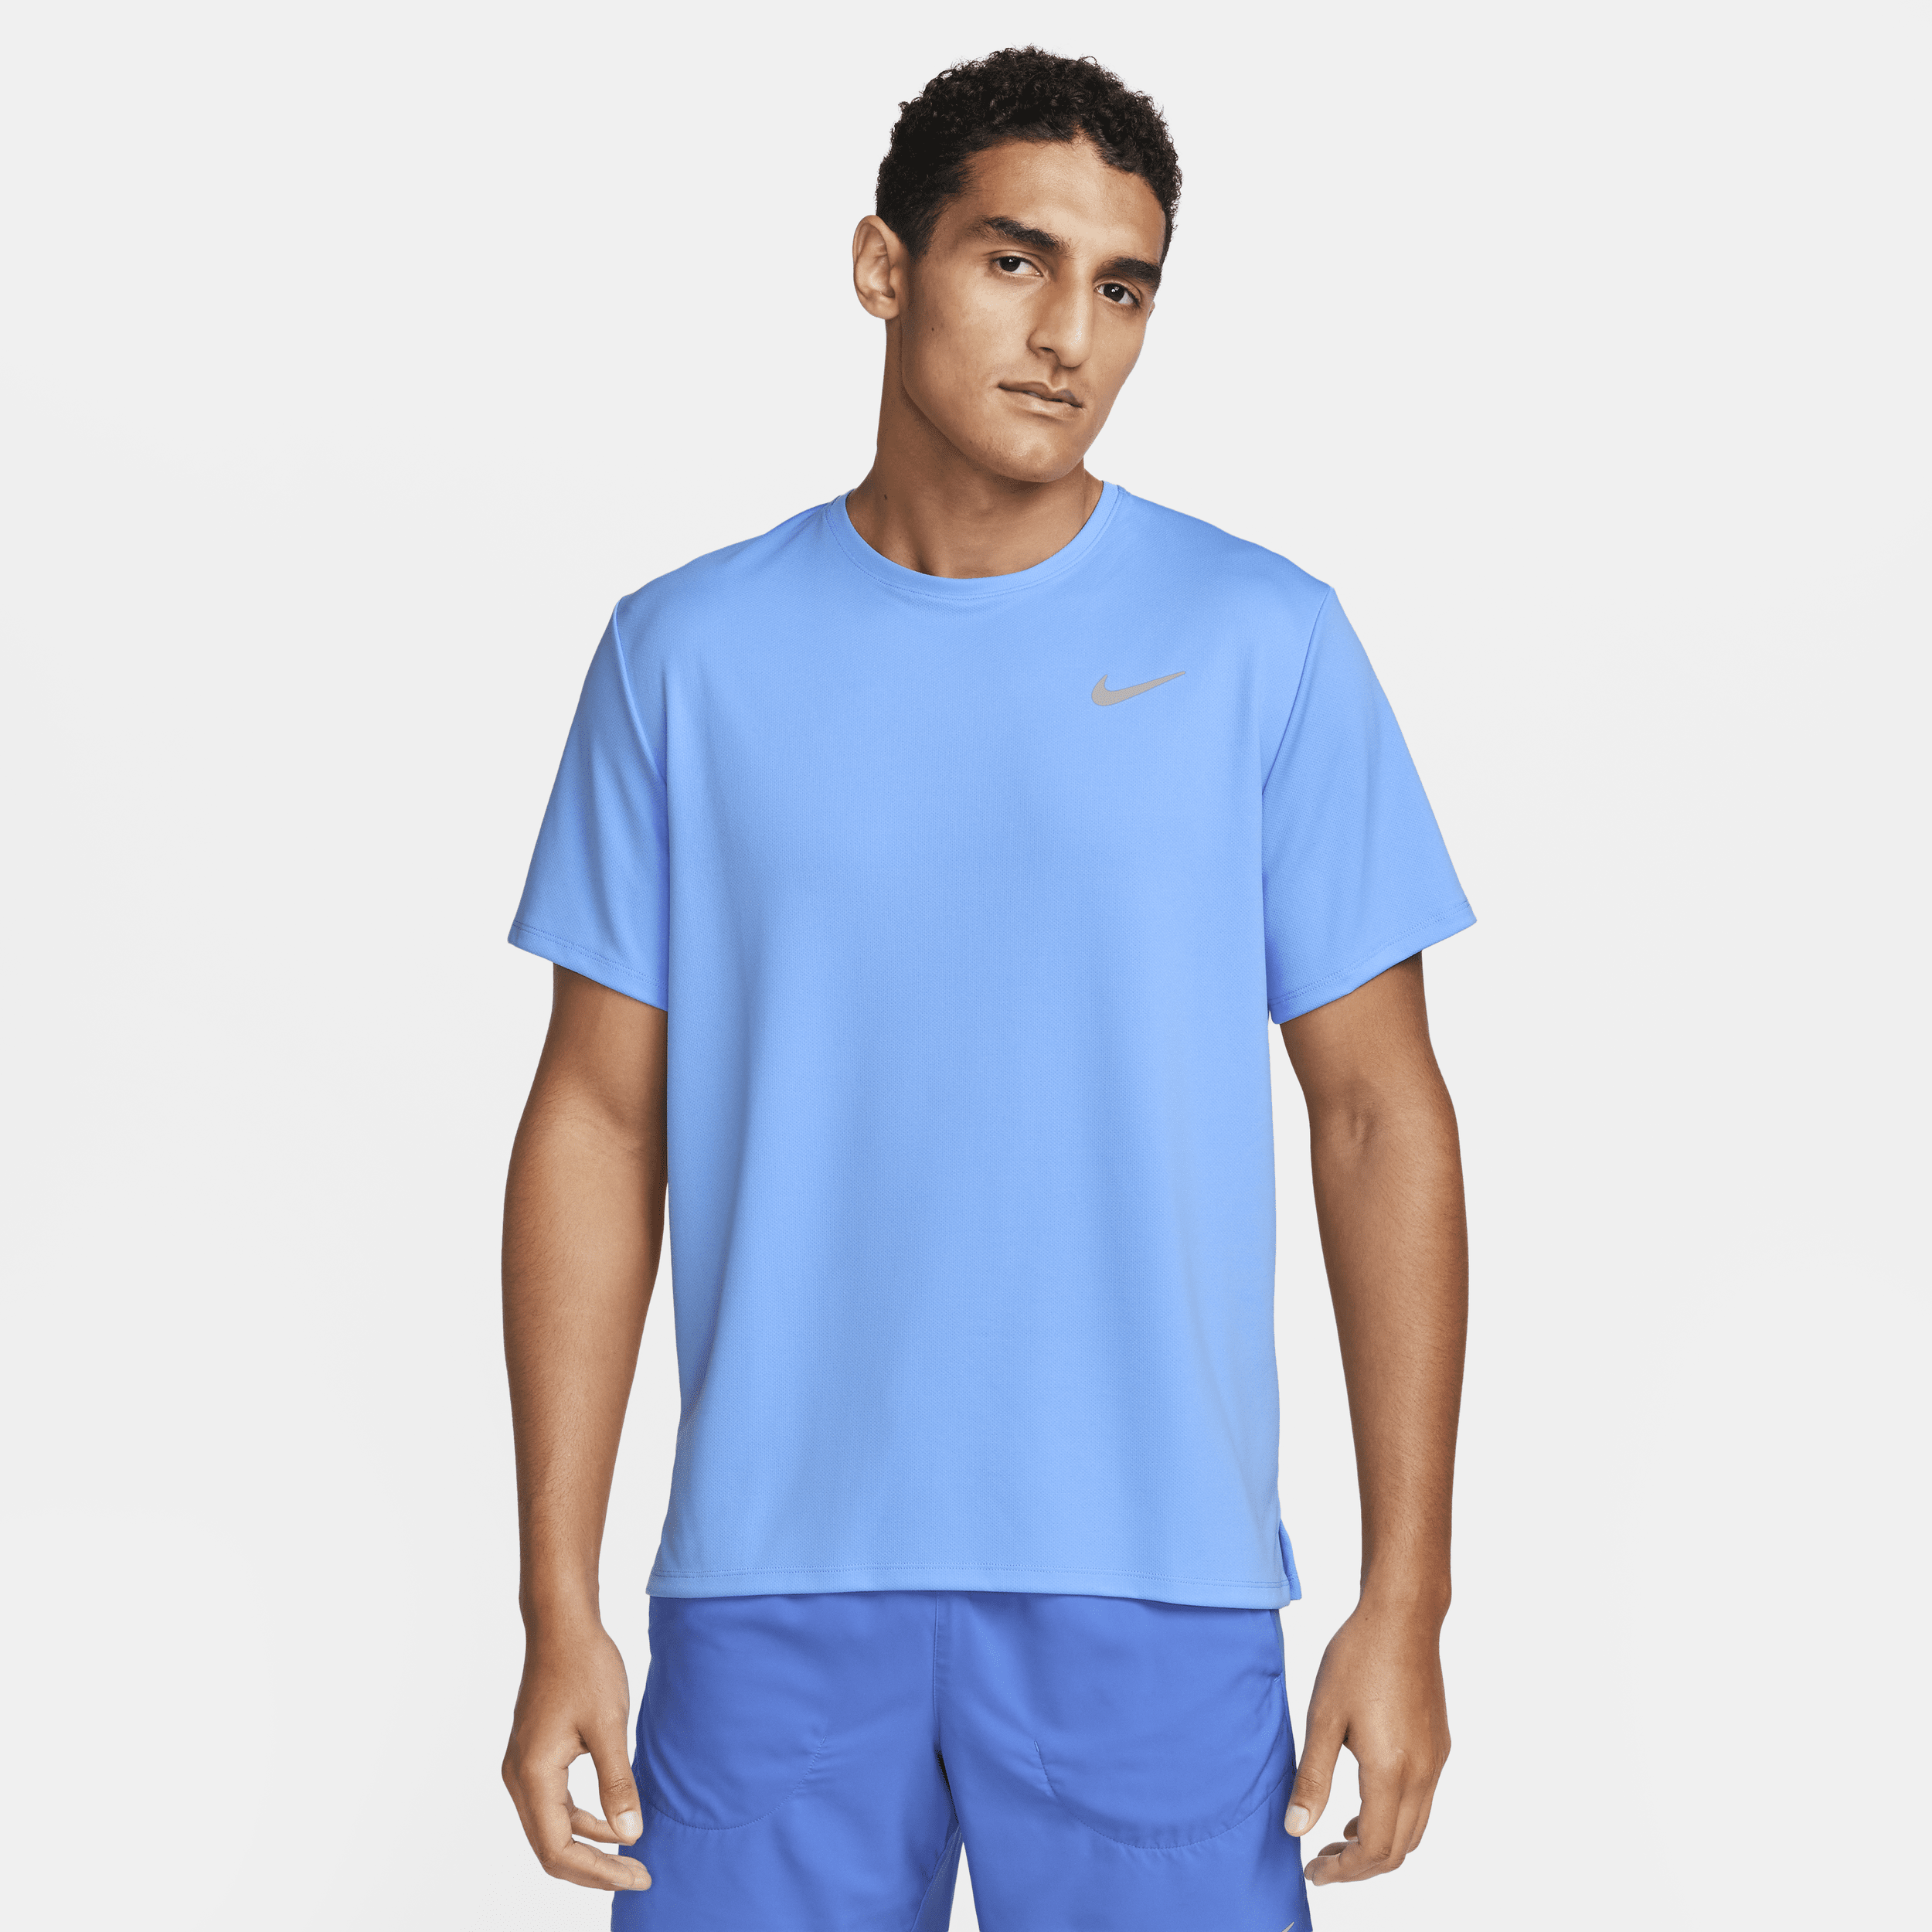 Nike Miler UV hardlooptop met korte mouwen en Dri-FIT voor heren - Blauw